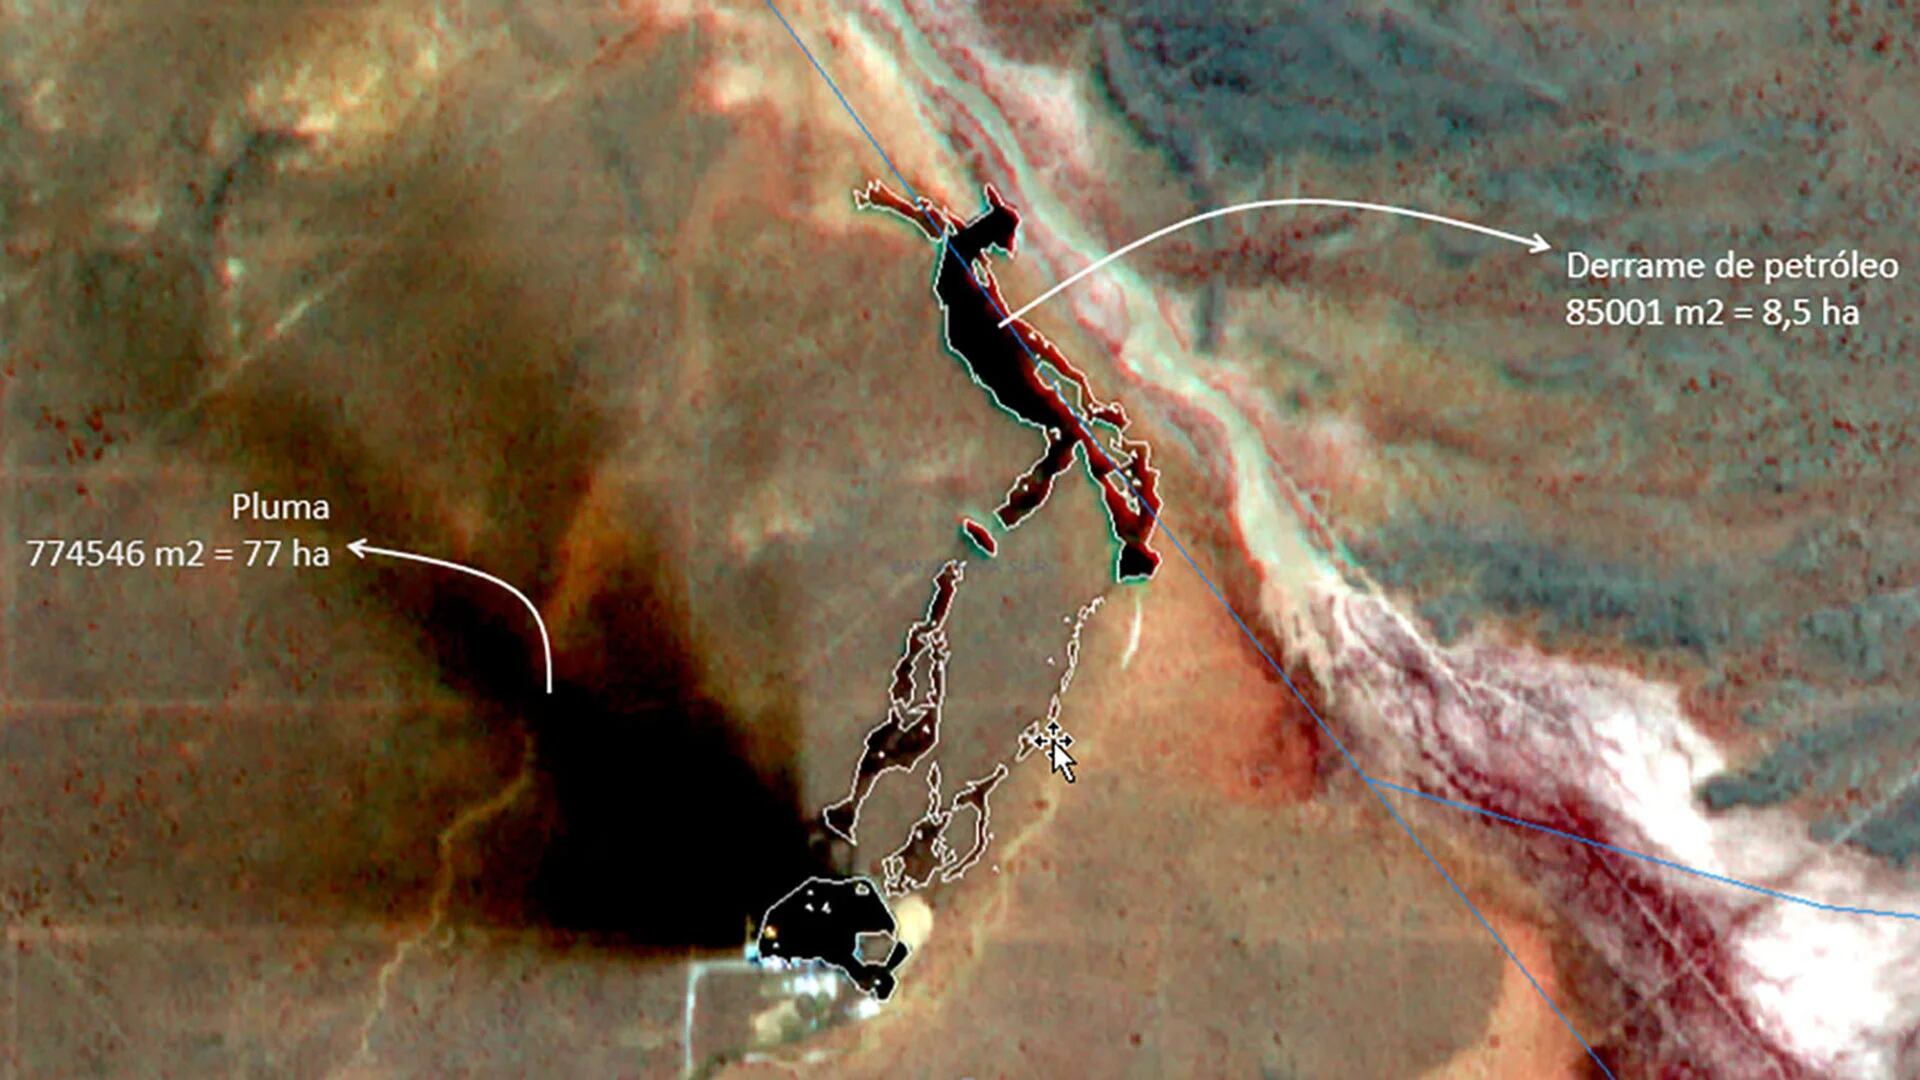 Divulgan imágenes satelitales de un enorme derrame de petróleo en Vaca Muerta